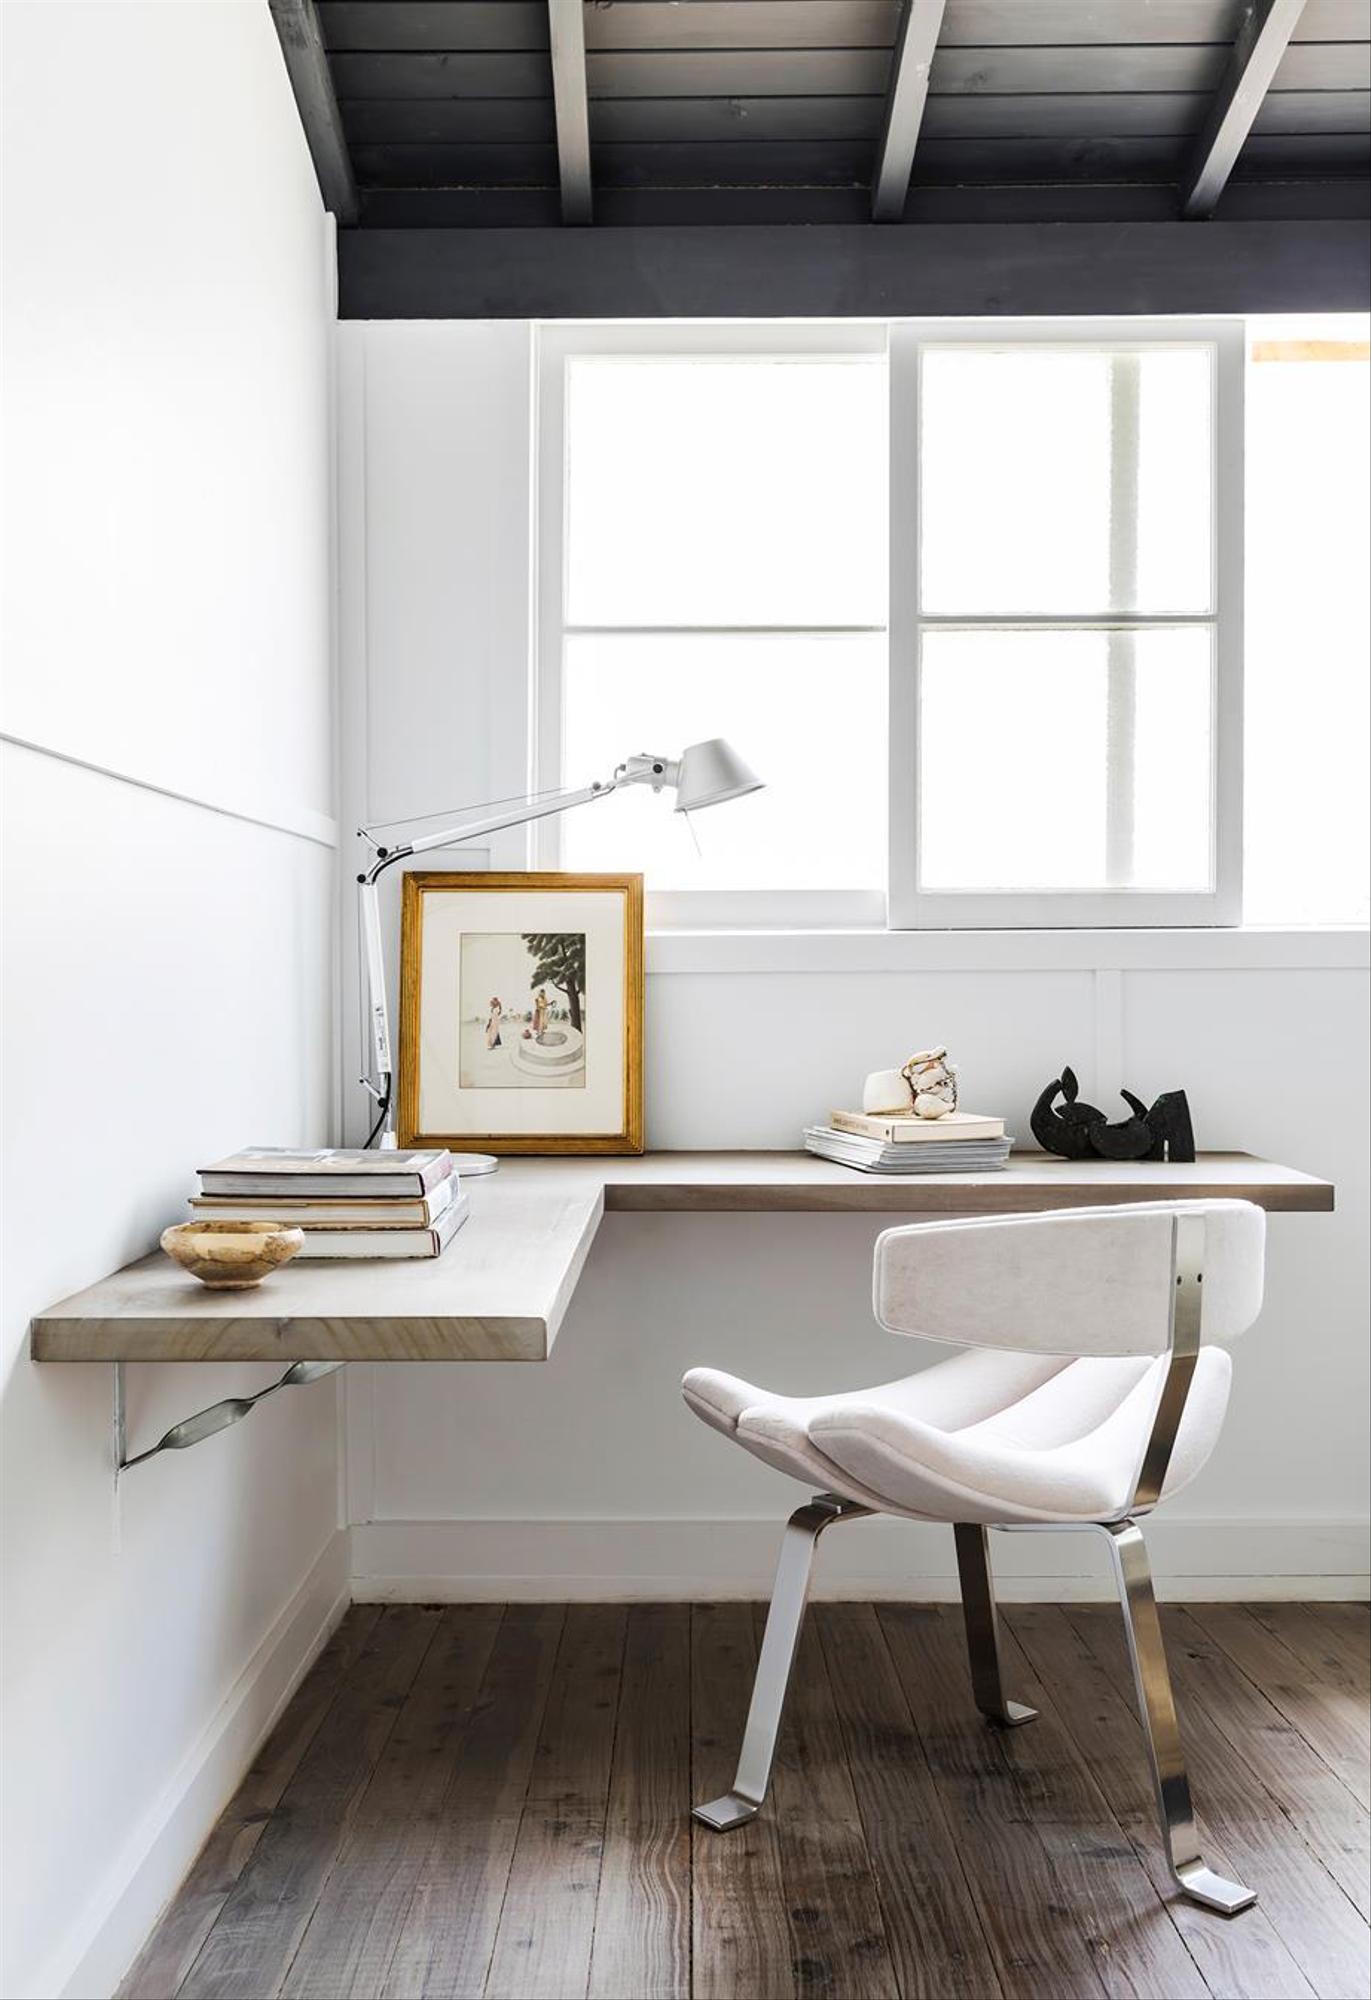 Những ai yêu thích phong cách thiết kế nội thất tối giản sẽ thích mê góc làm việc này. Mặt bàn bằng gỗ siêu đơn giản được gắn lên bức tường, ghế ngồi êm ái cùng đèn bàn phần thân mảnh mai có thể điều chỉnh độ cao tiện lợi.